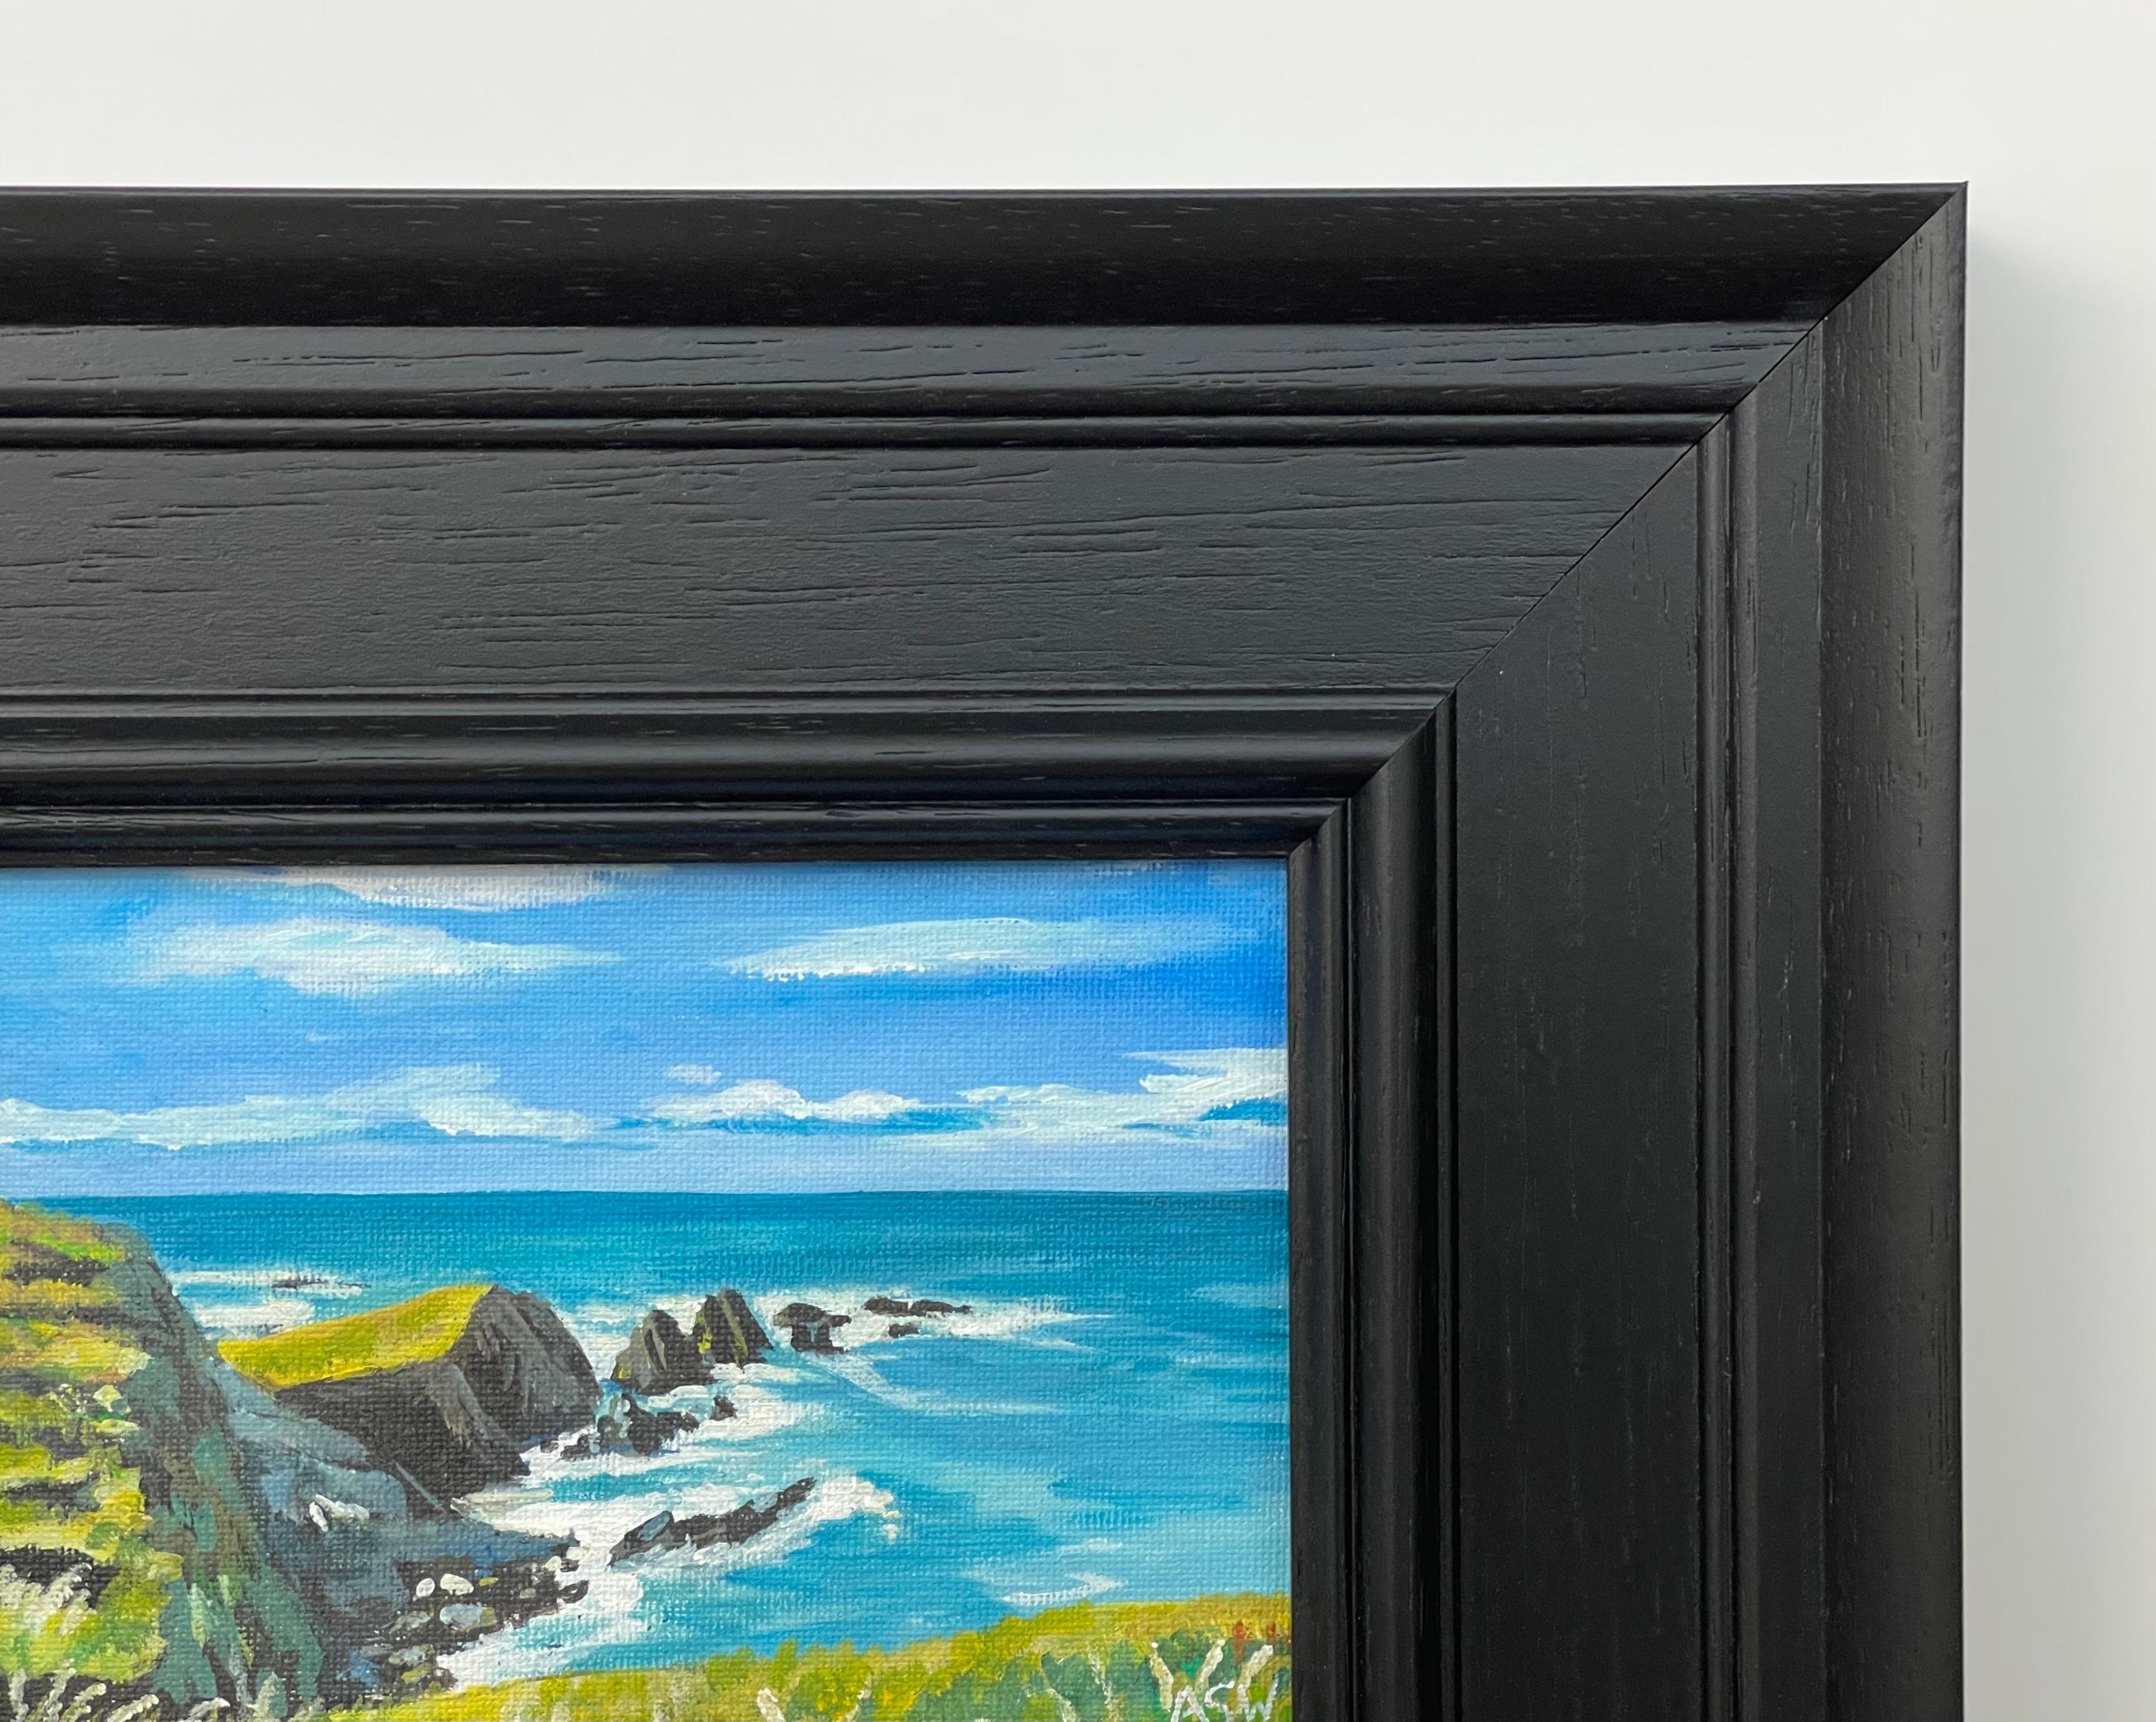 Miniature Sea Landscape Study of Devon Coastline by Contemporary British Artist For Sale 2